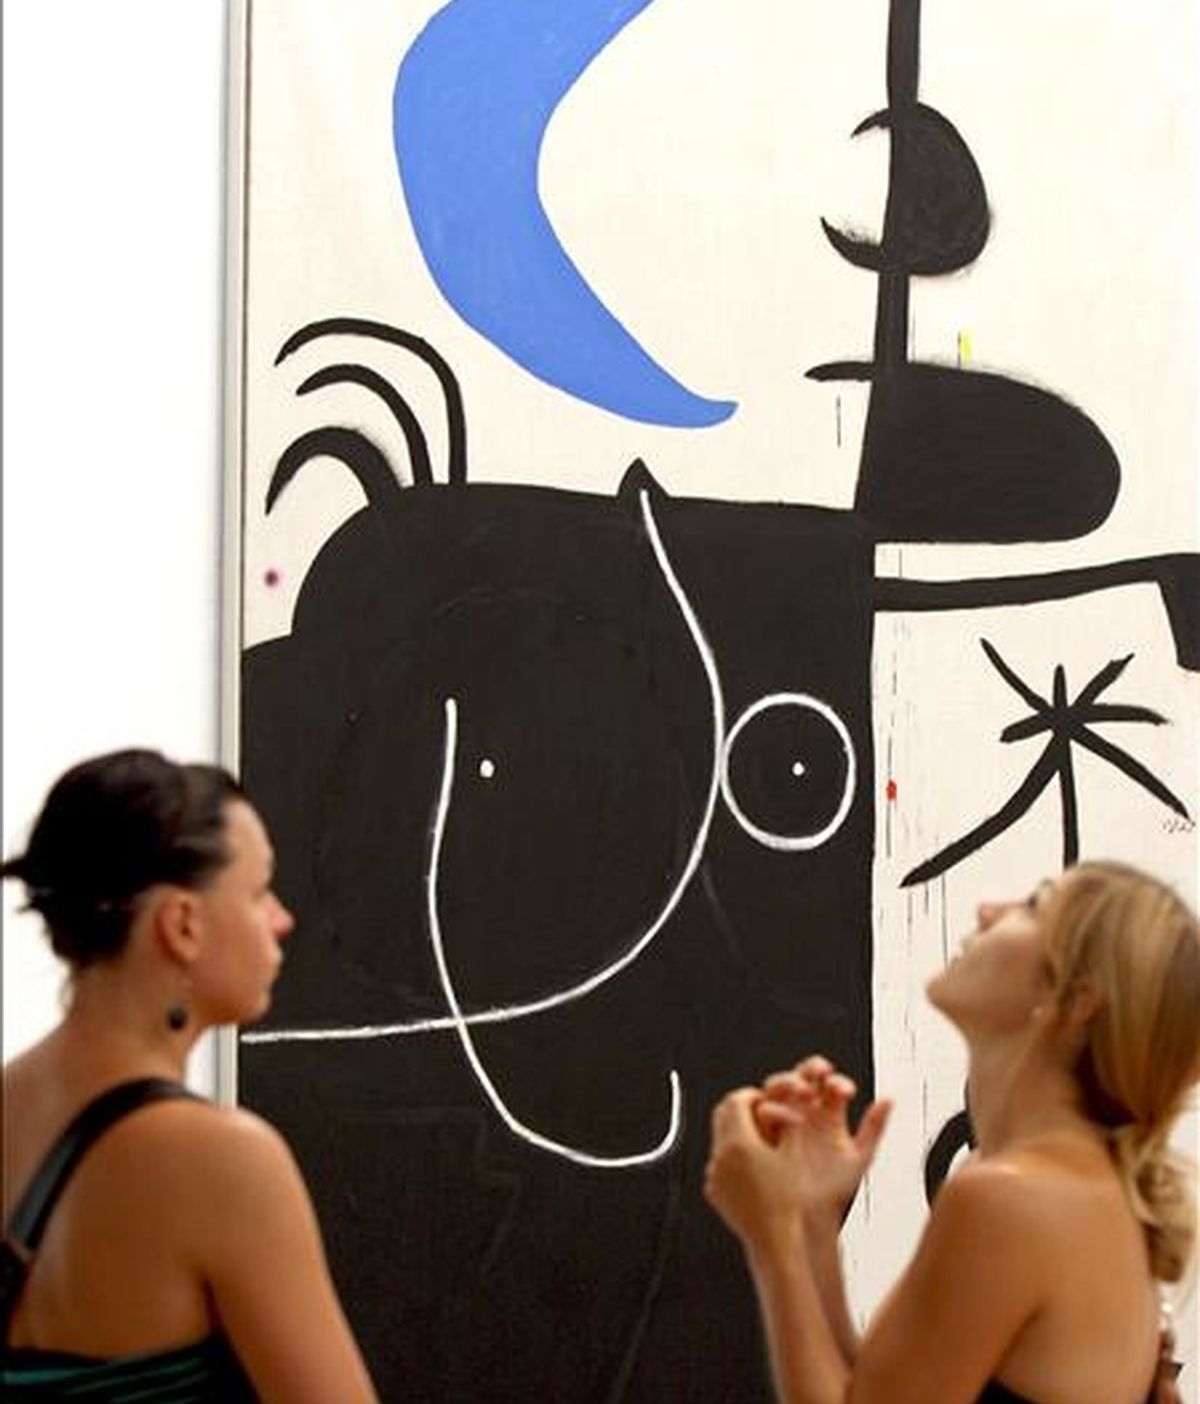 Dos jóvenes ante el cuadro "Mujer delante la luna" de Joan Miró, de la exposición "Miró-Dupin Art i poesia", que tuvo lugar en 2009 en la Fundación Miró de Barcelona. EFE/Archivo